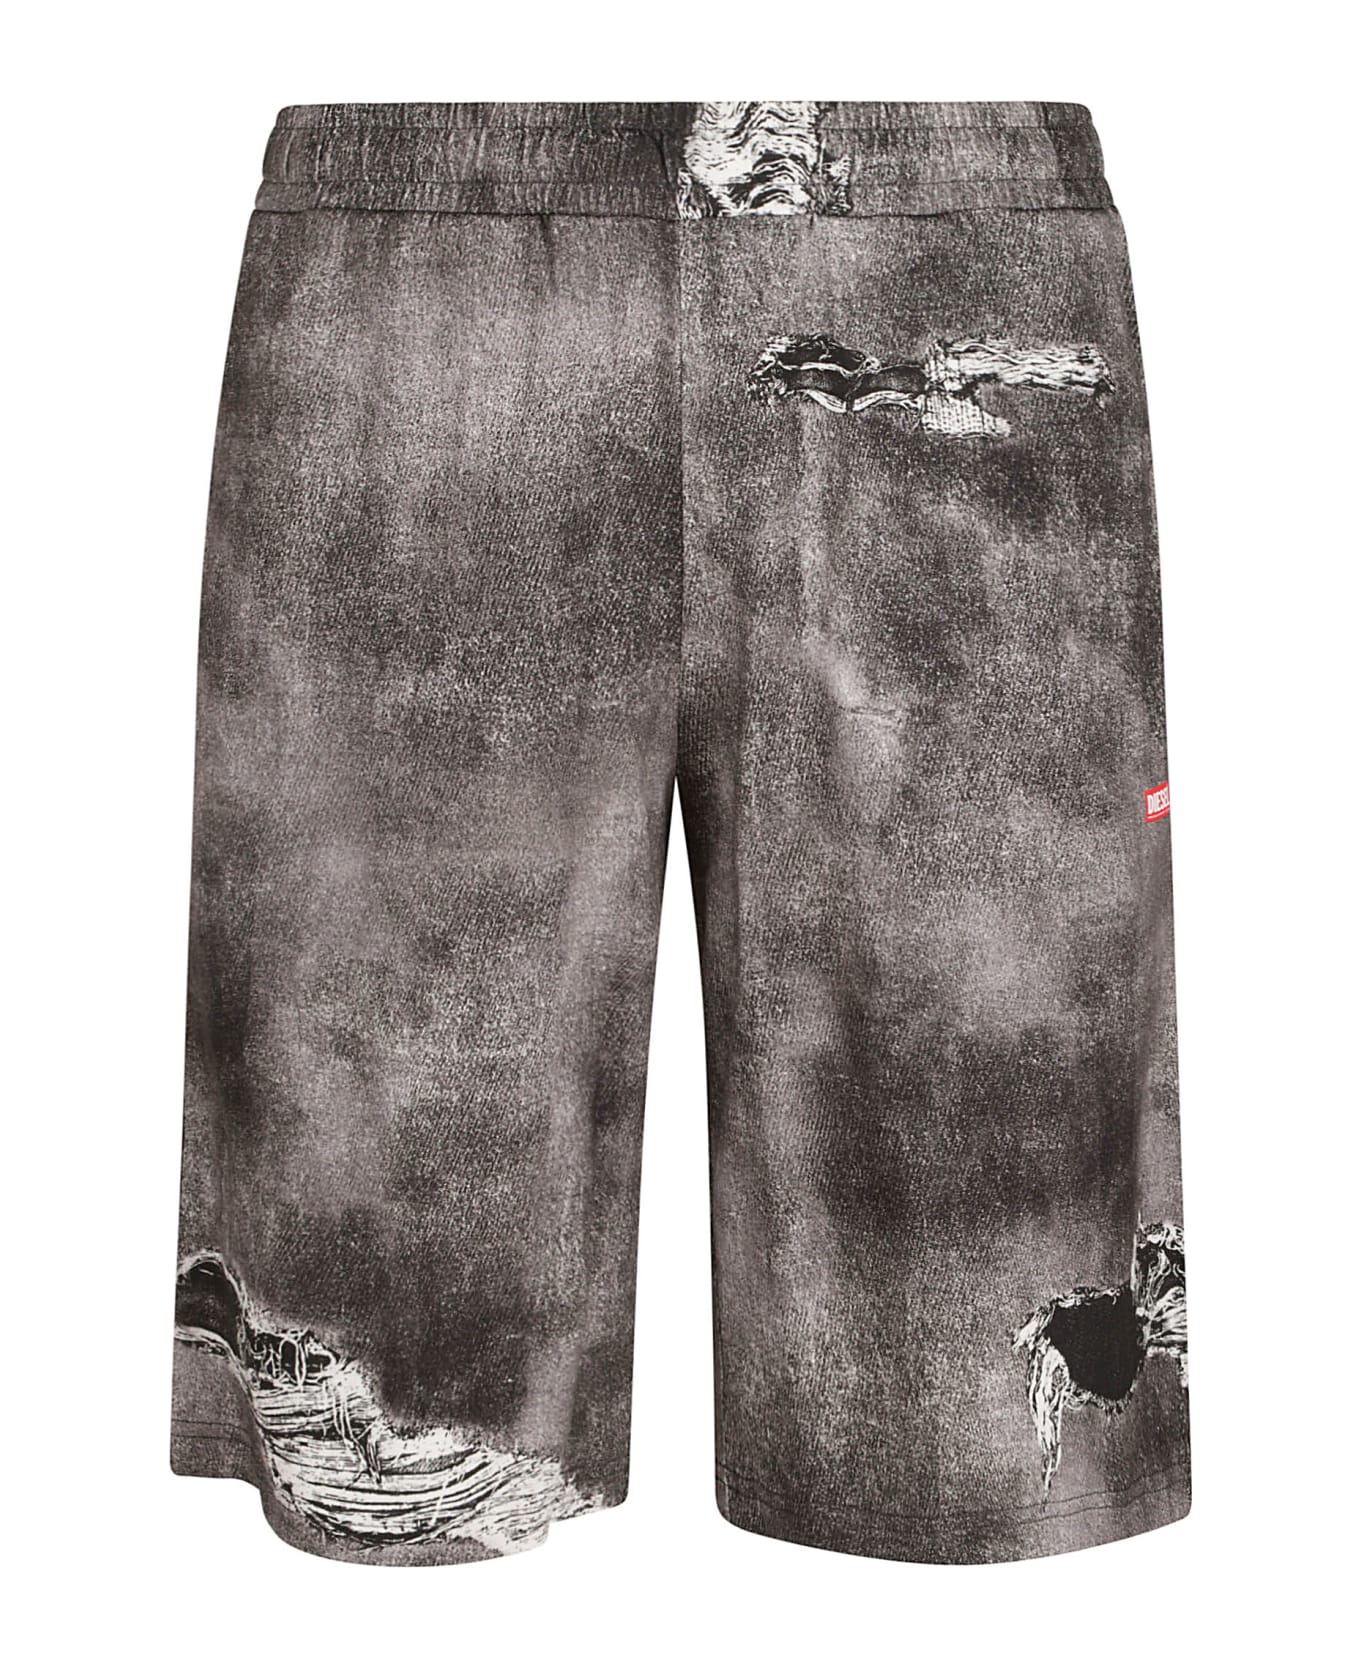 Diesel Distressed Shorts - Non definito ショートパンツ